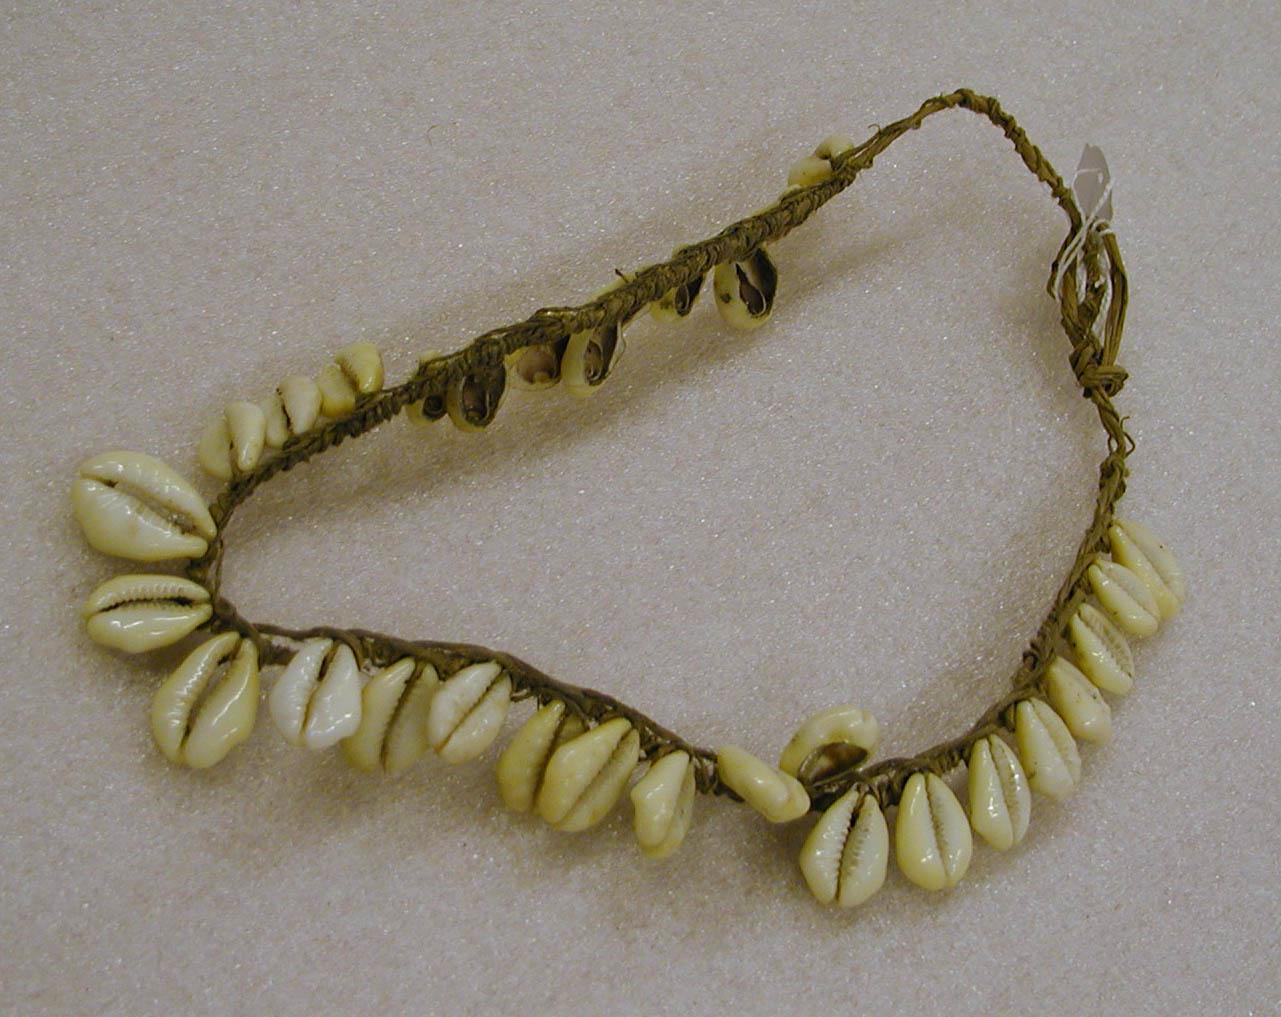 EA/99/43 - 
neck ornament
